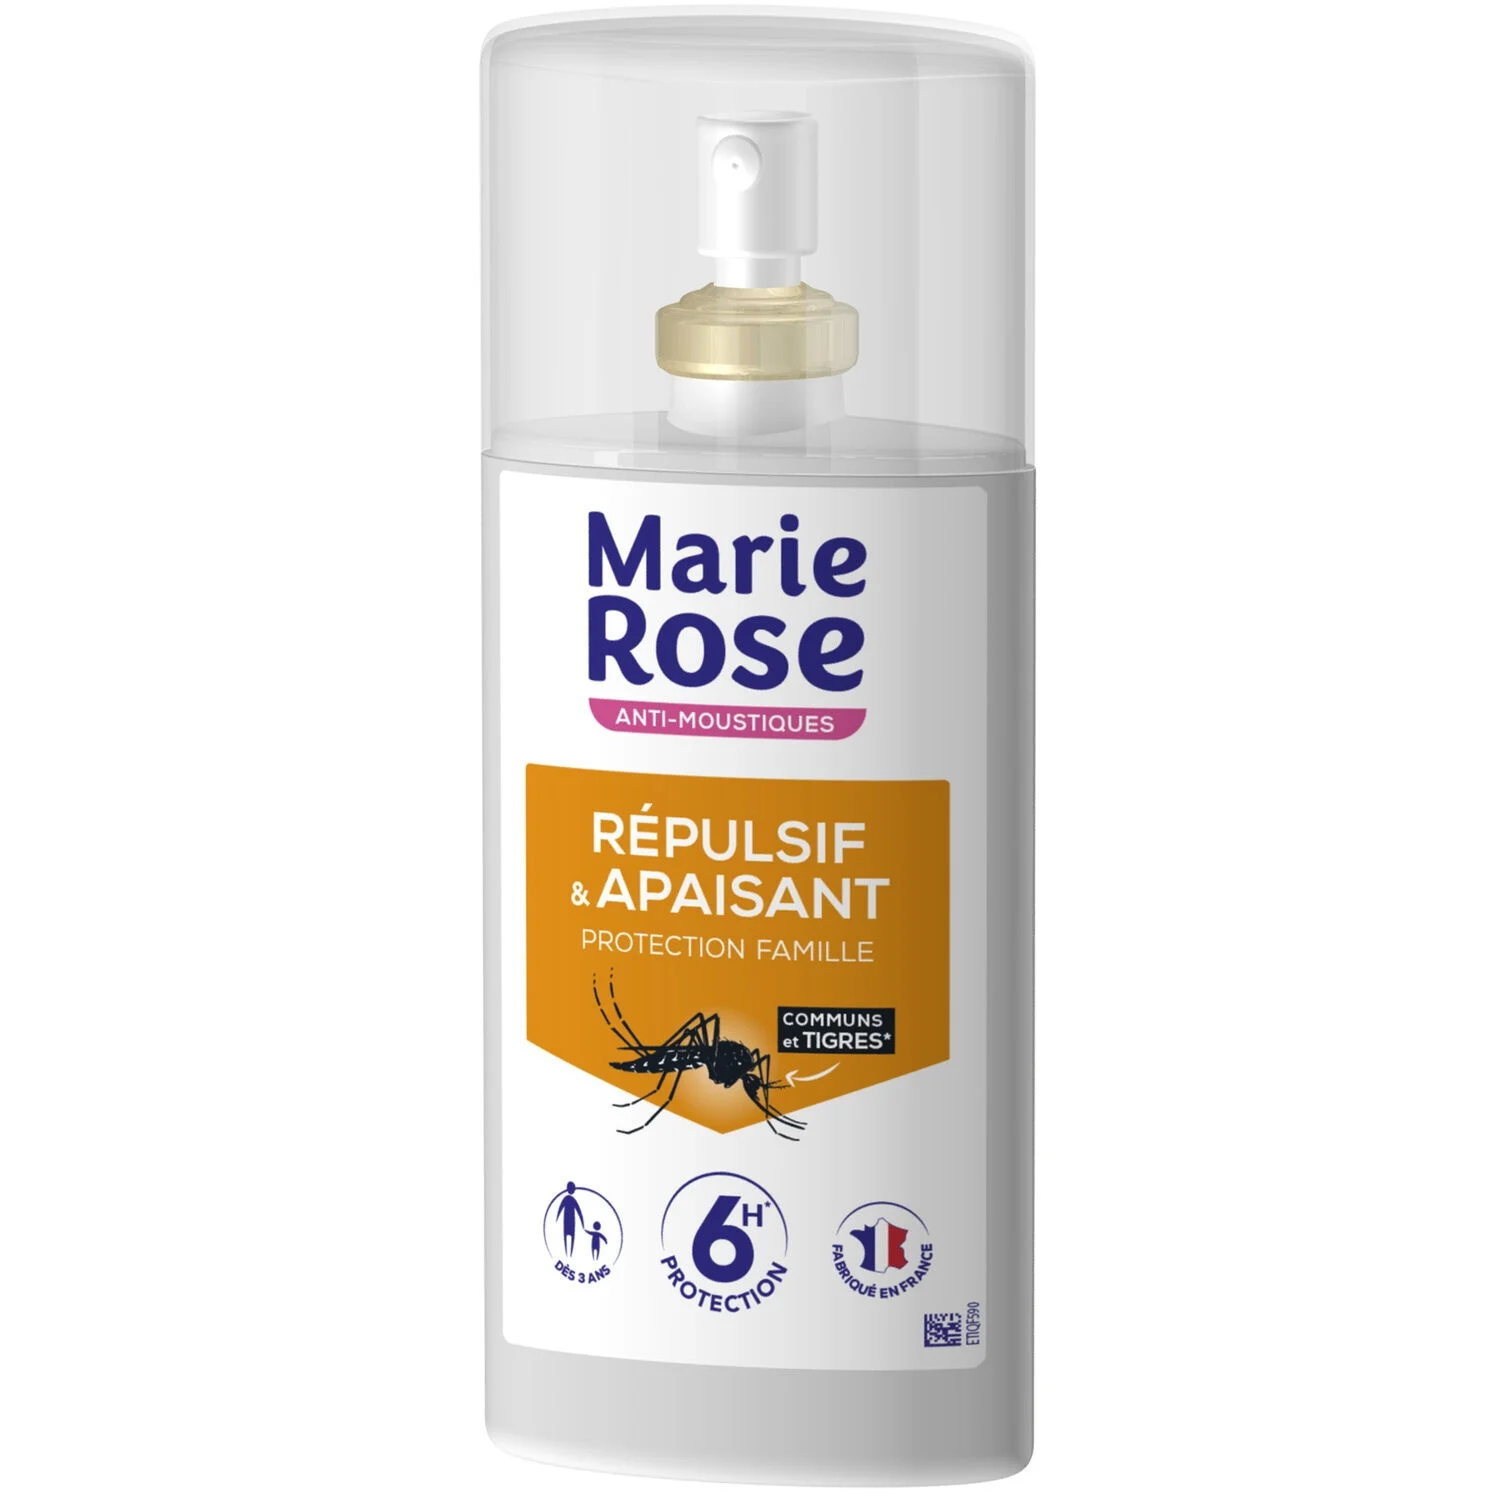 Anti-moustiques Répulsif & Apaisant - Marie Rose